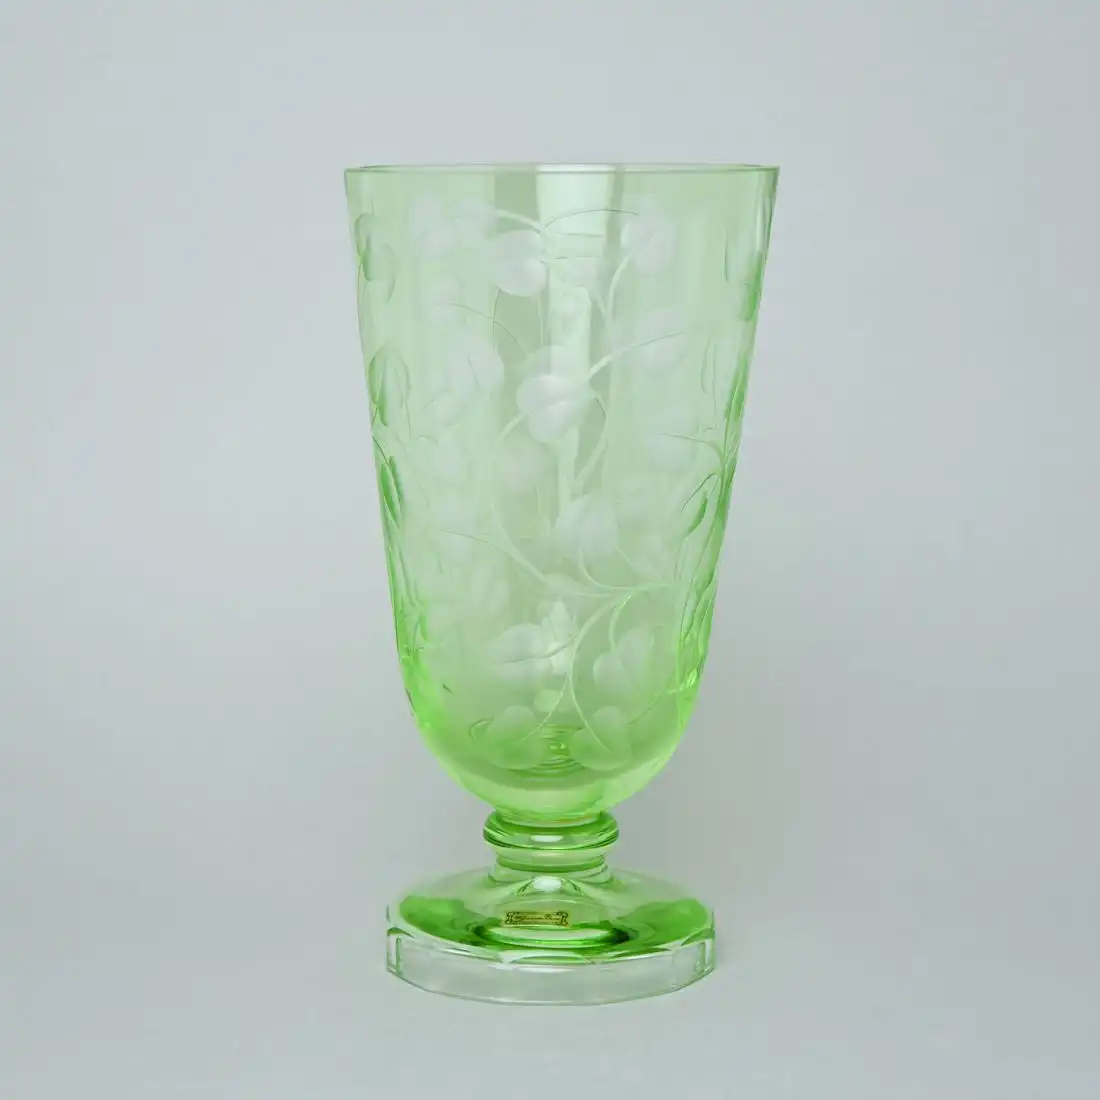 Egermann - Cut vase